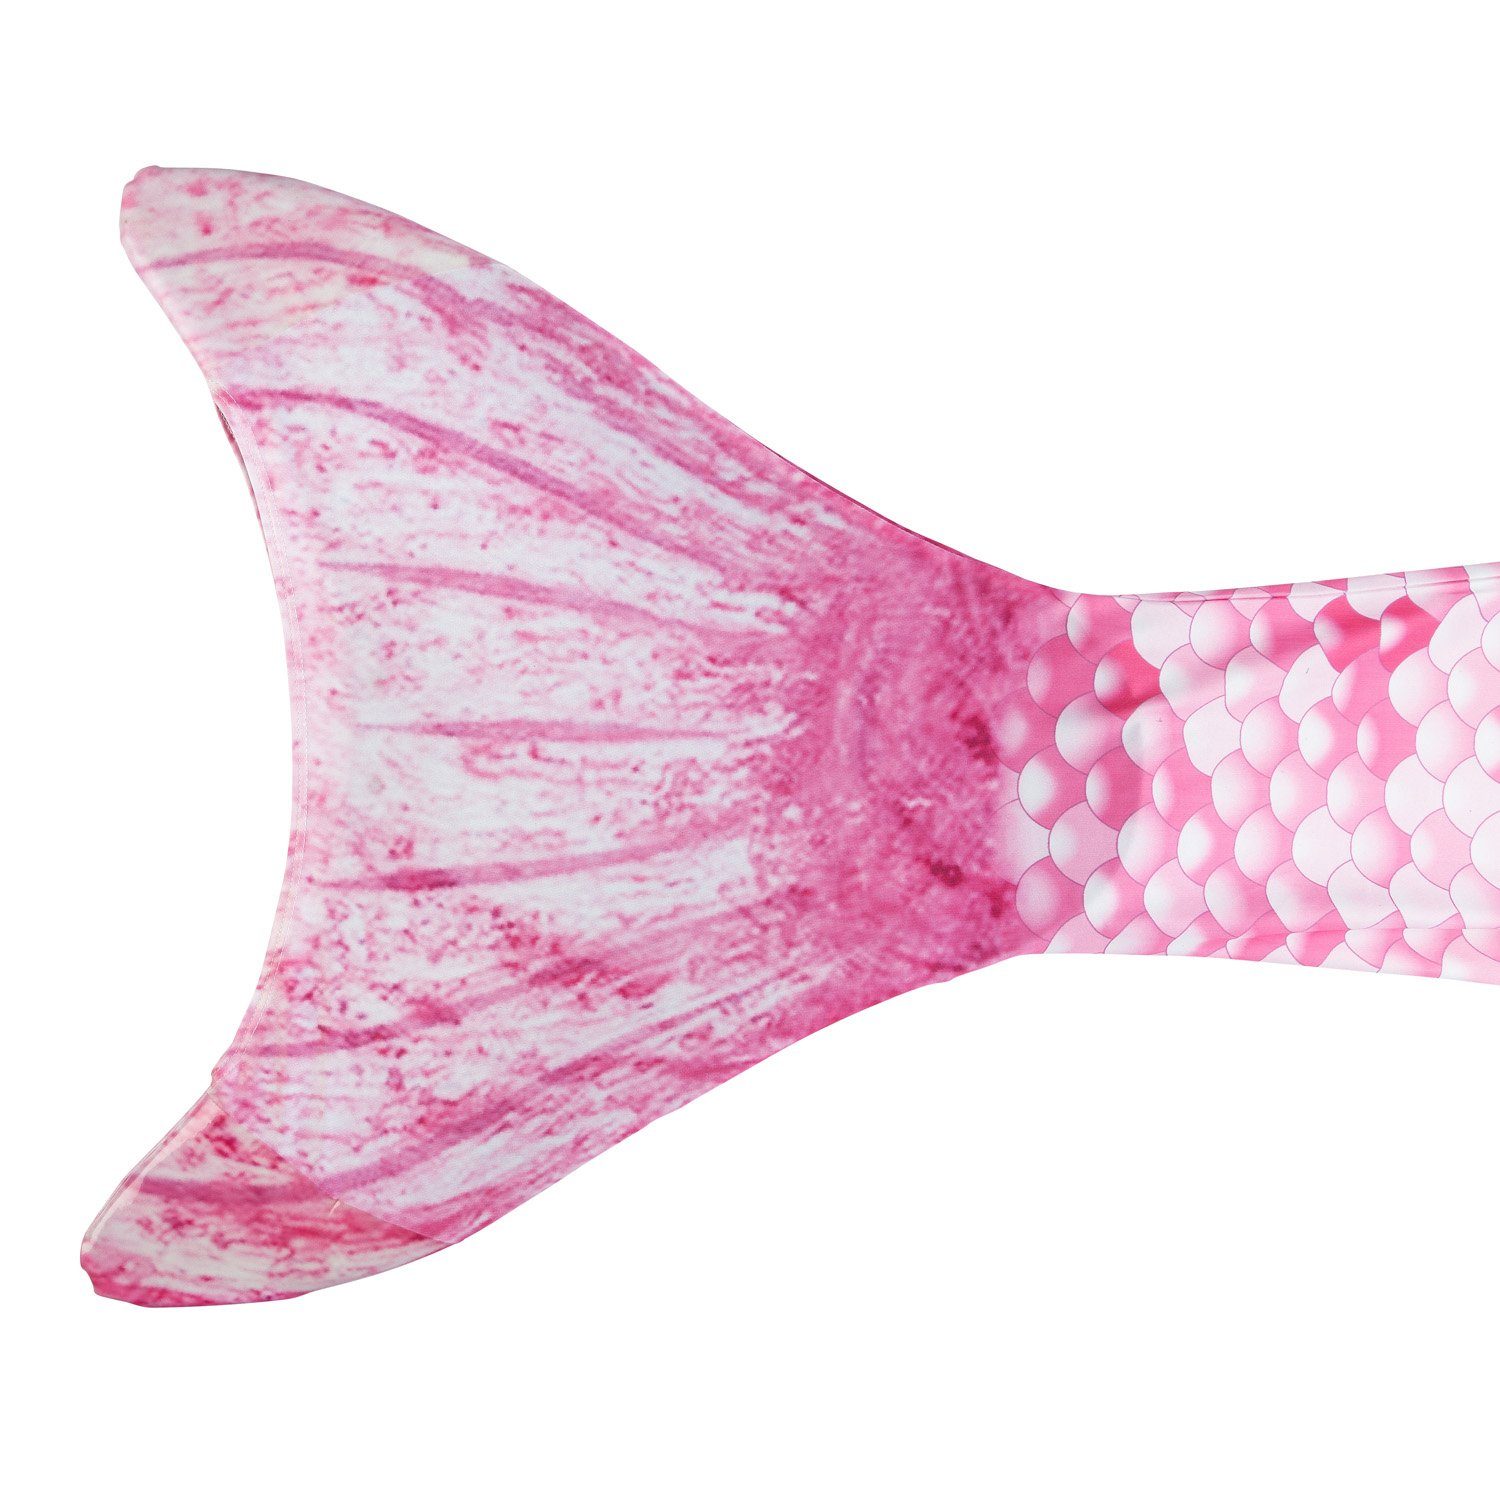 M/L Schwimmhilfe Pink Meerjungfrauflosse Größe Idena